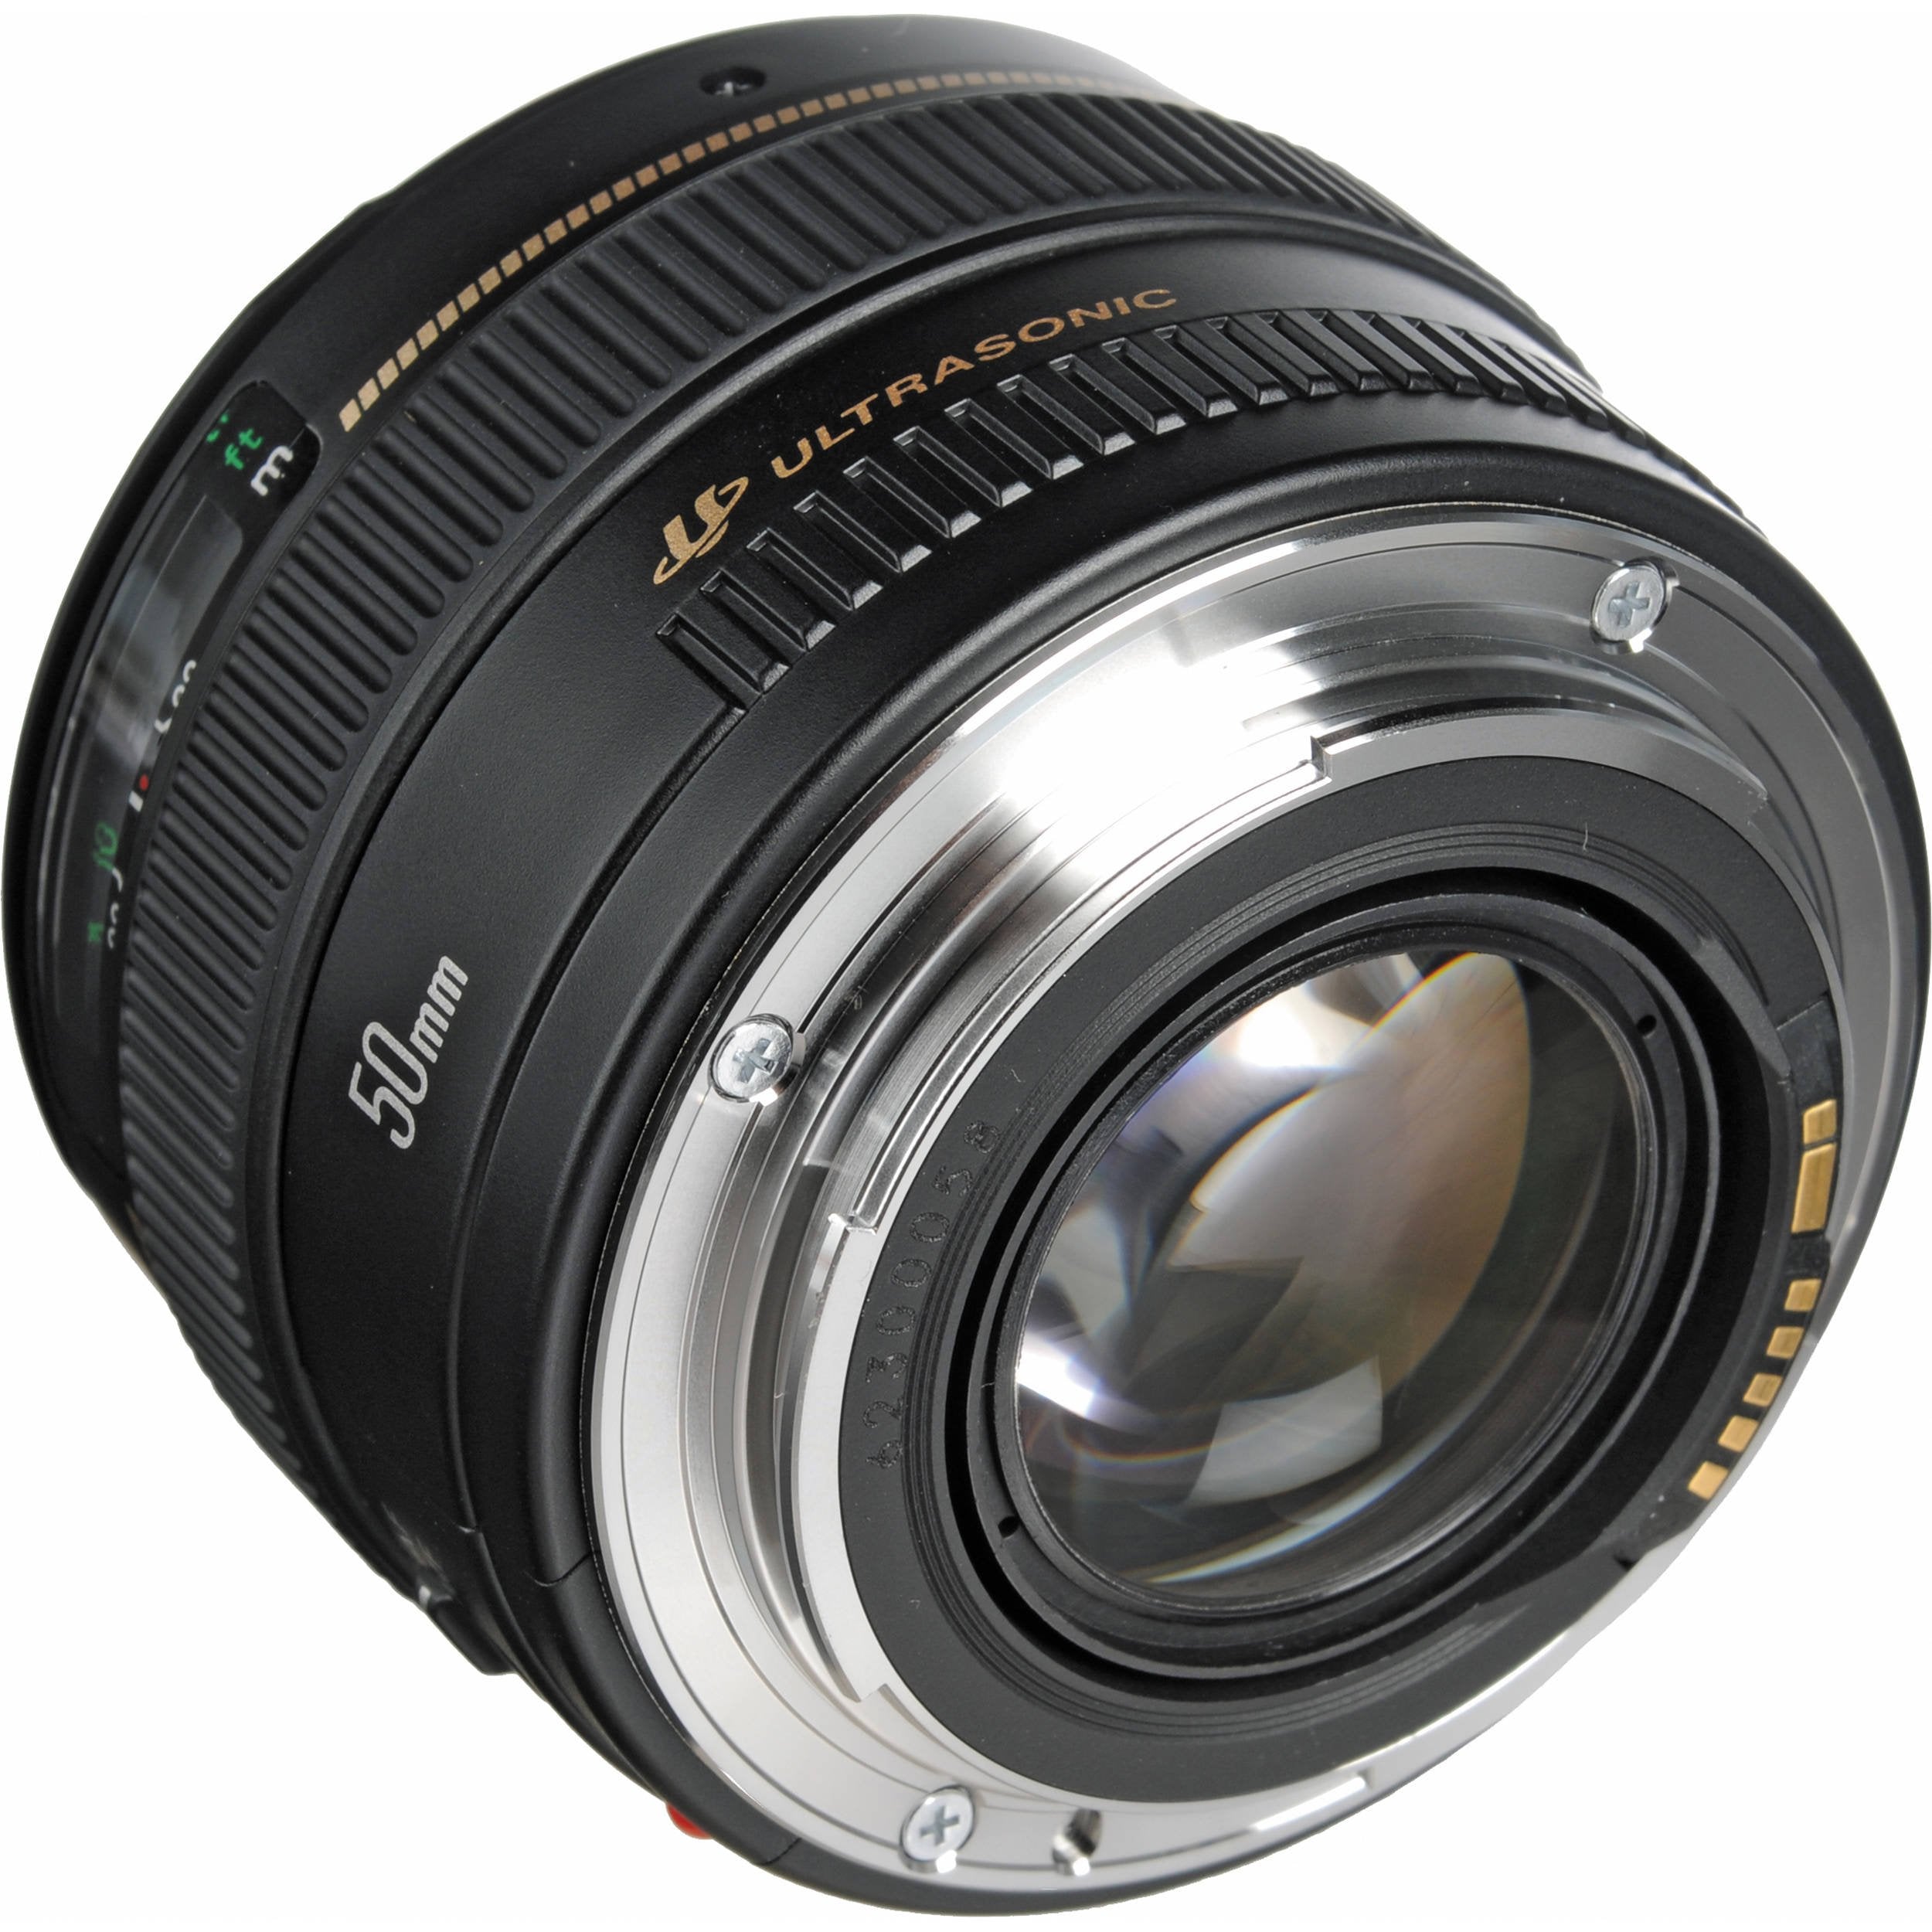 Canon EF 50 1.4 USM 58MM Lens (International Model) + 3pcs UV Lens Filter Kit + Cleaning Kit